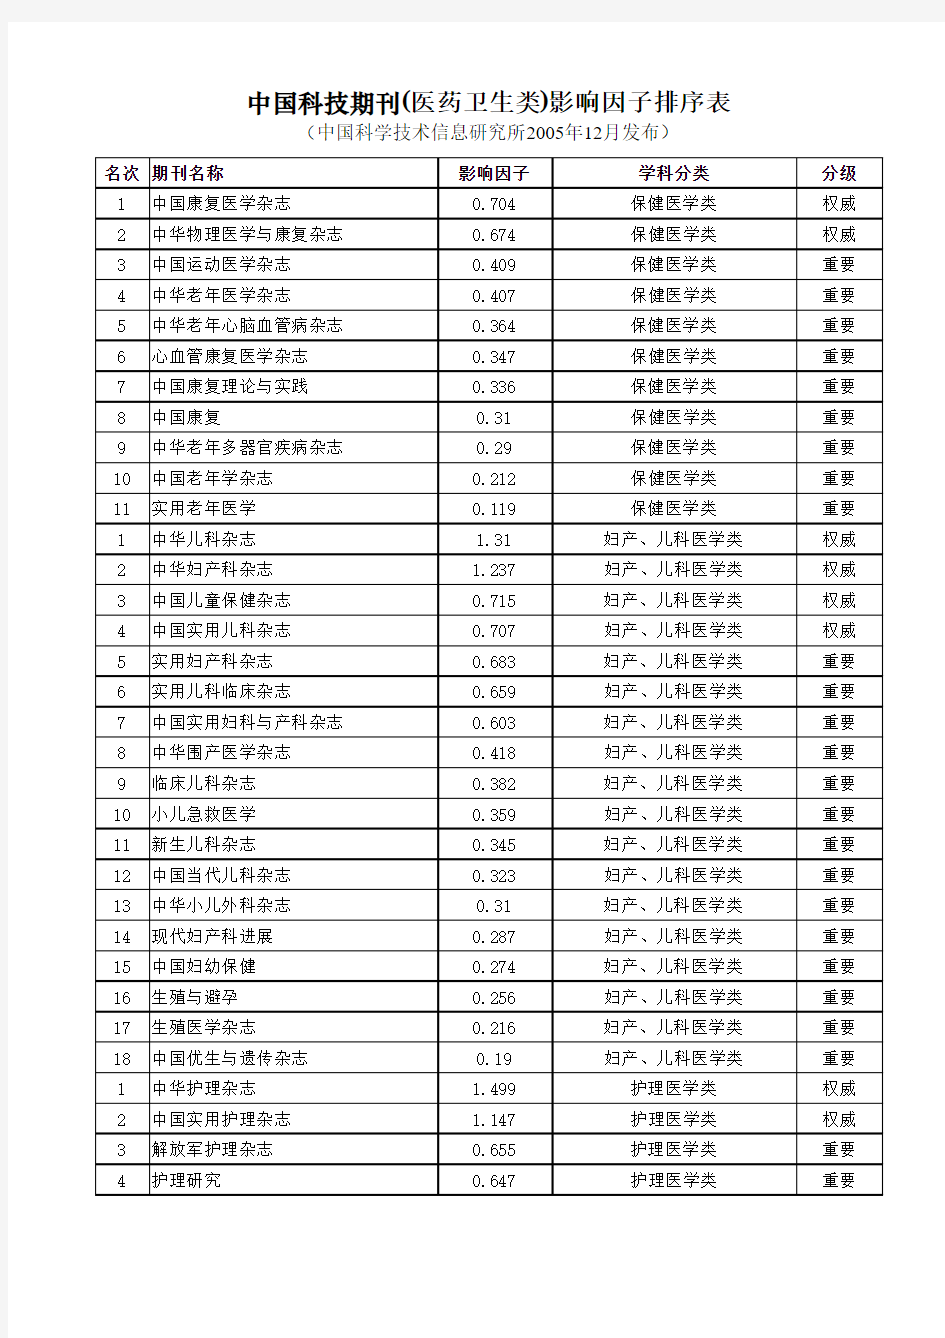 中国科技期刊(医药卫生类)影响因子排序表